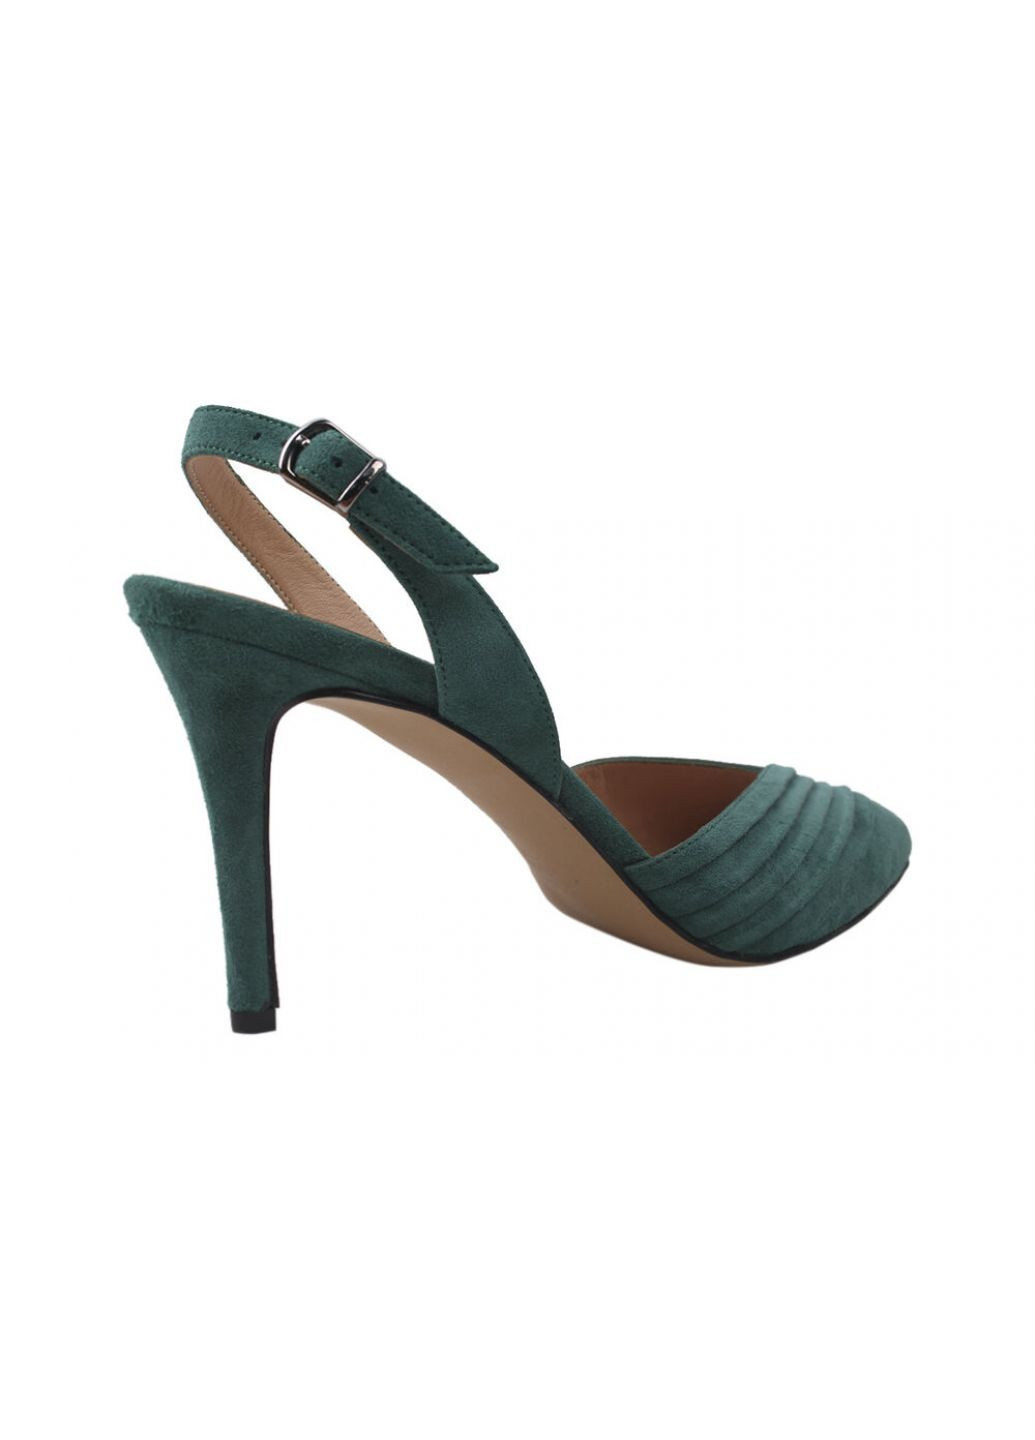 Туфлі жіночі на каблуці зелені Mario Muzi 464-20lt (257426322)